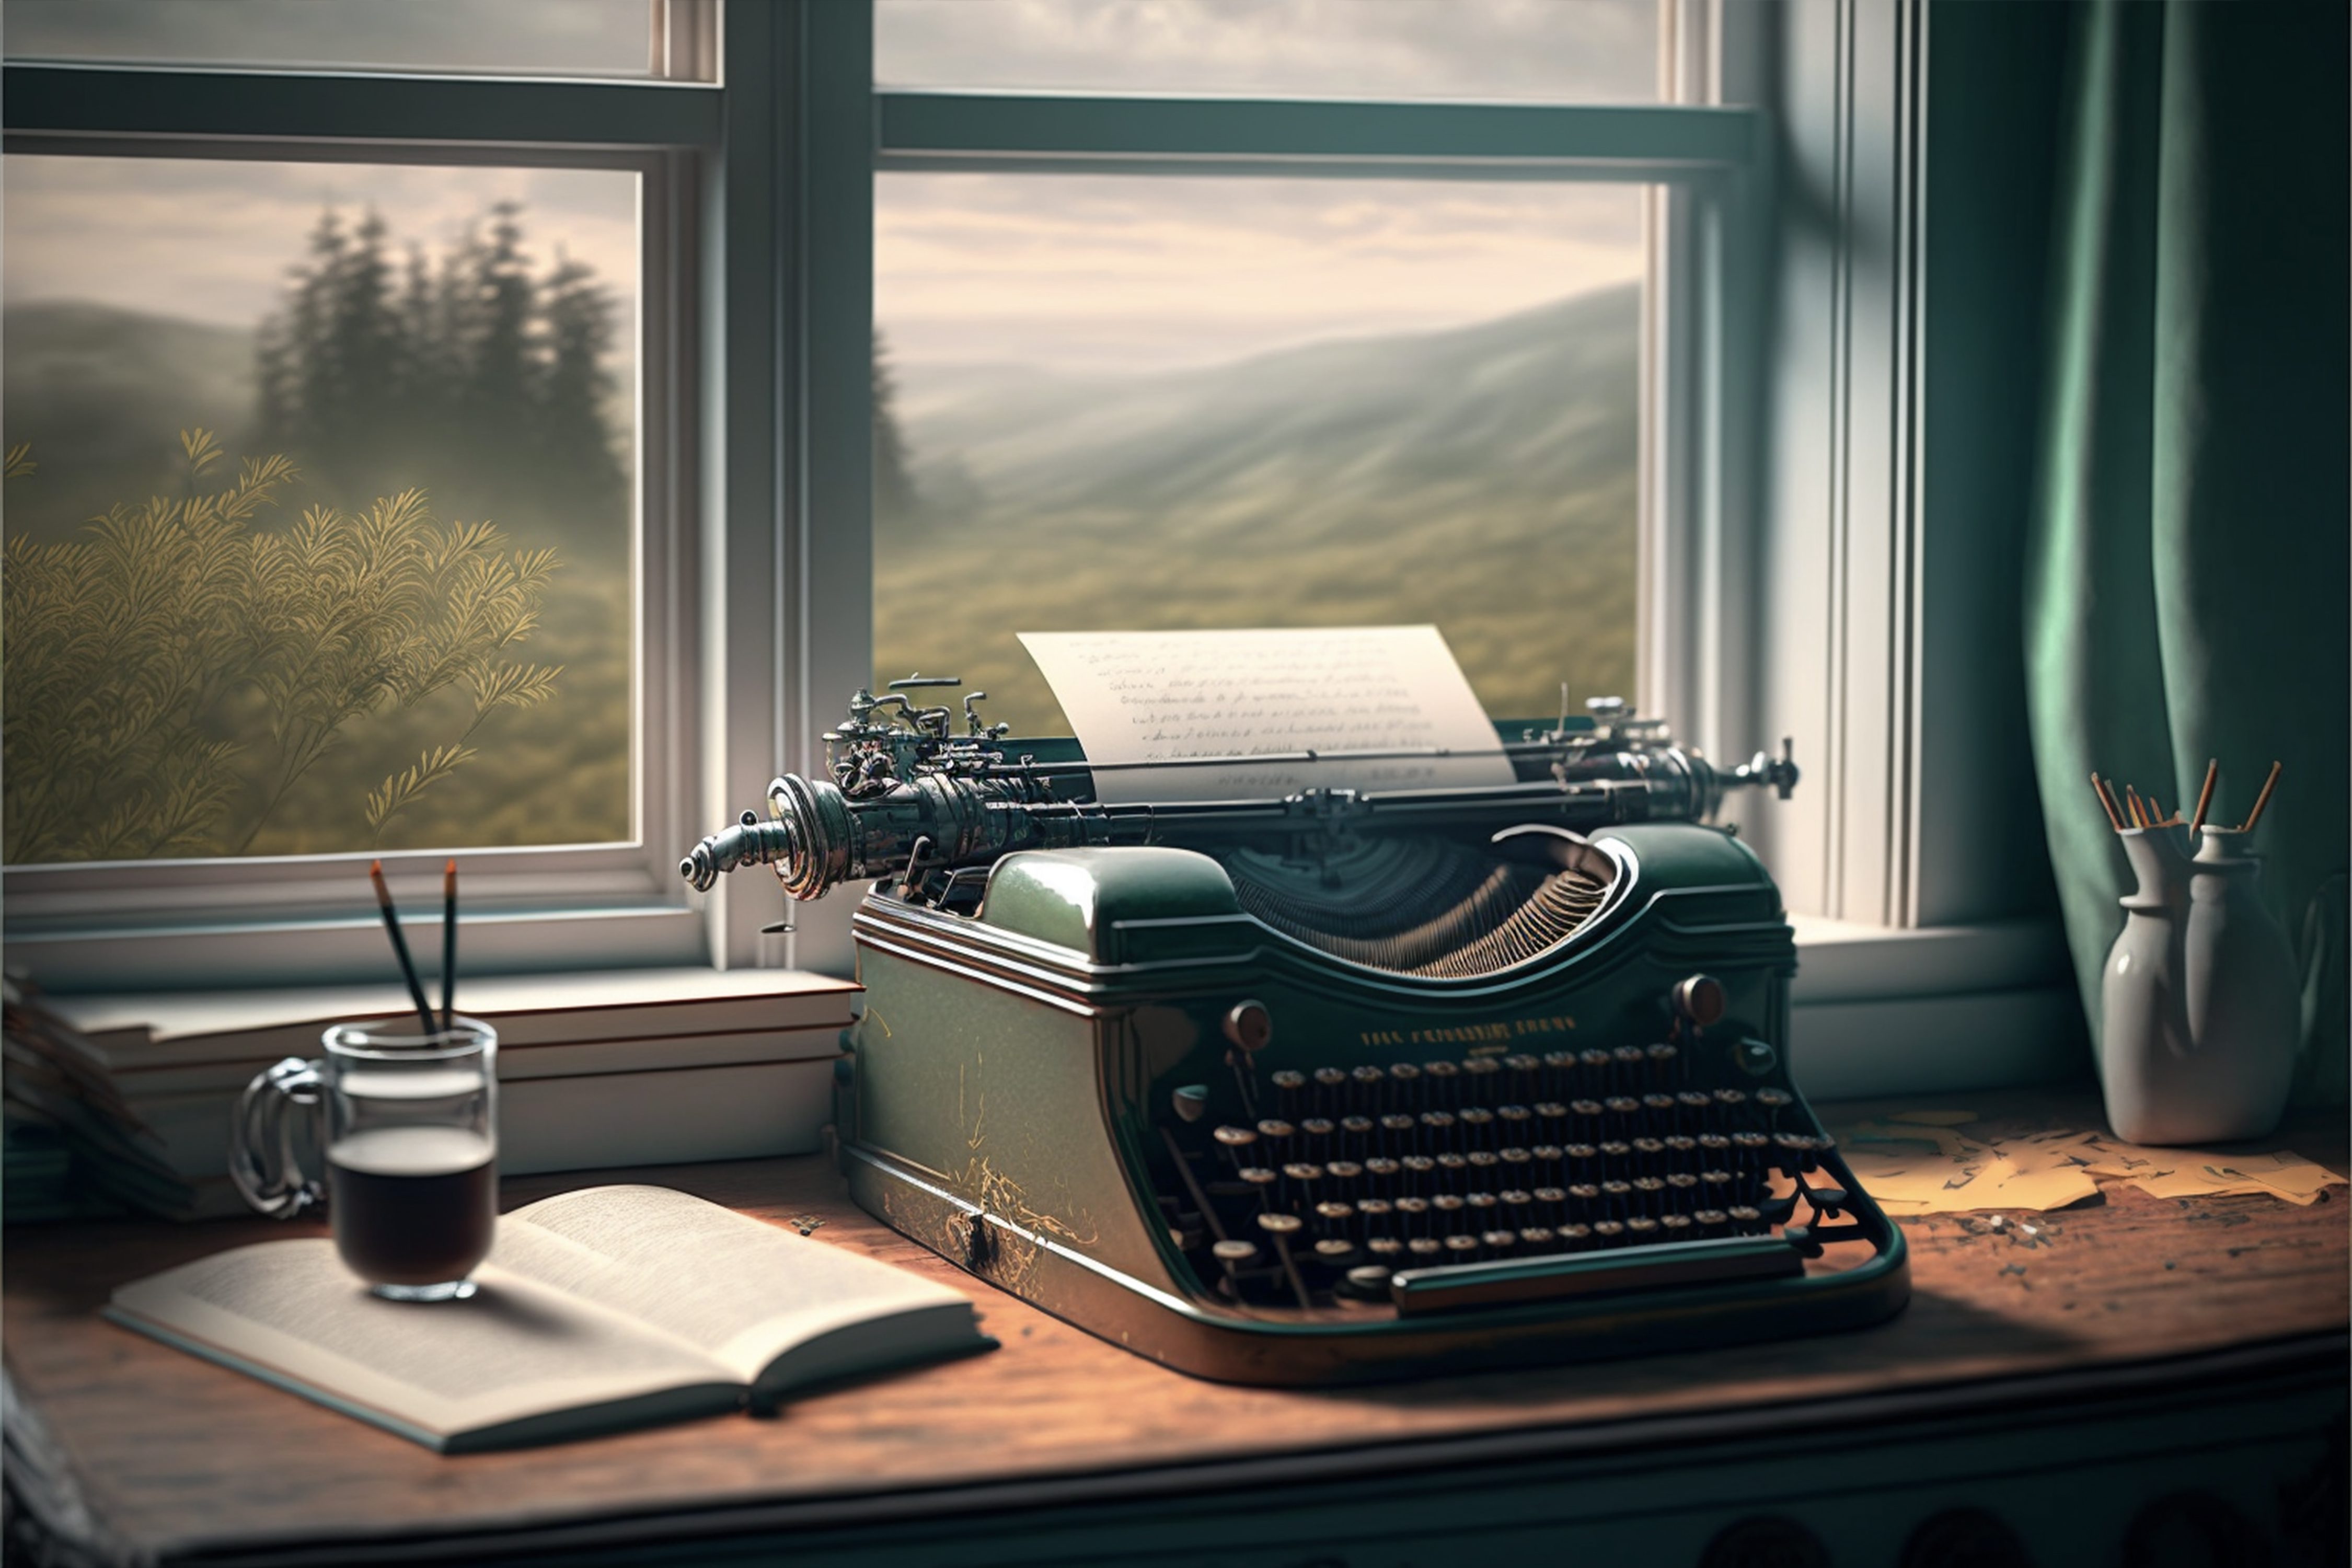 Schreibmaschine und Bücher am Fenster, Vorderansicht